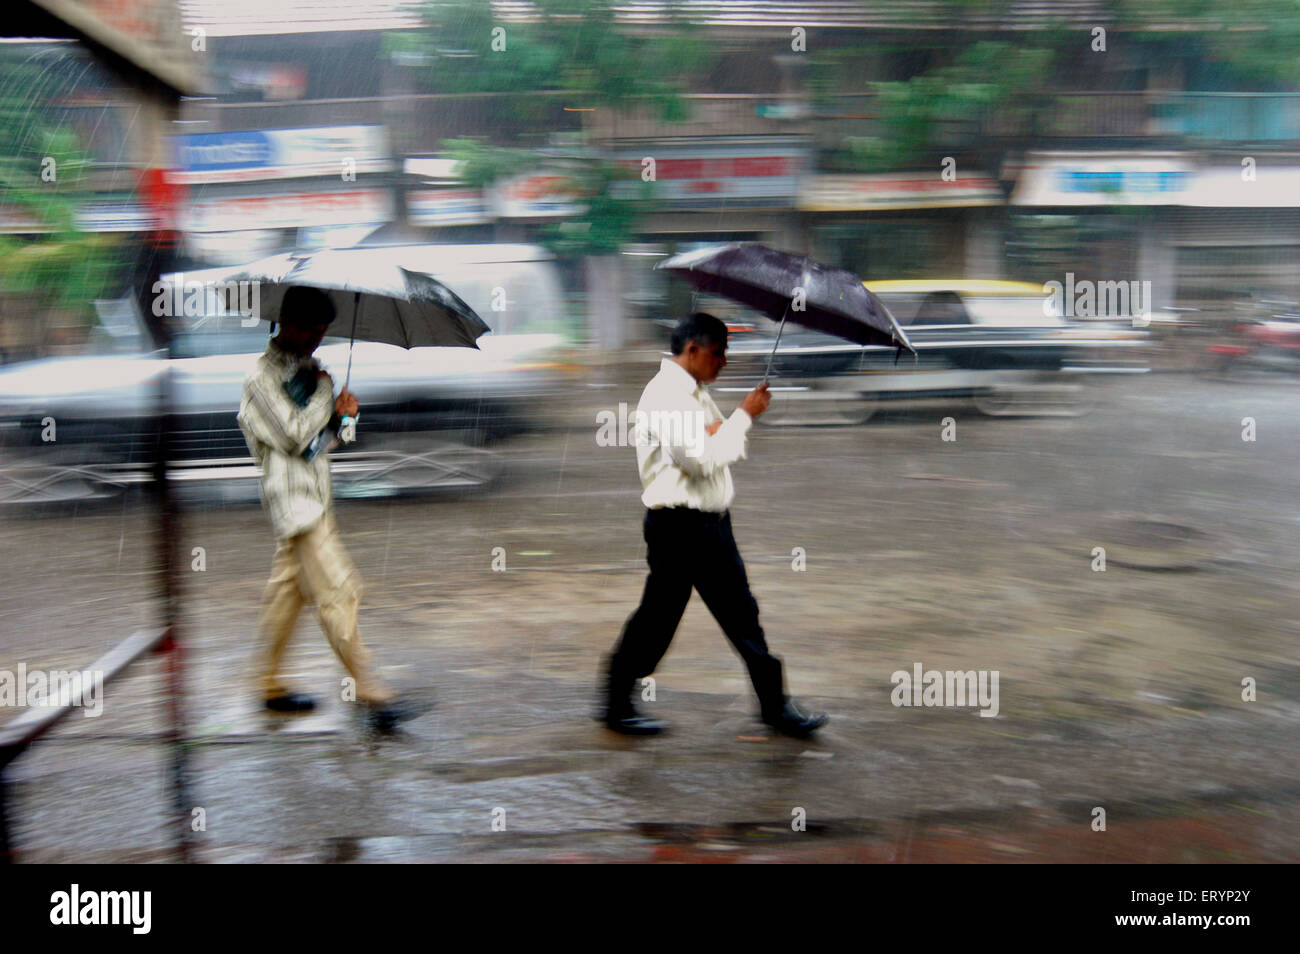 Viajeros protegerse con su paraguas mientras caminan en las fuertes lluvias durante la temporada de monzones en Bombay Foto de stock